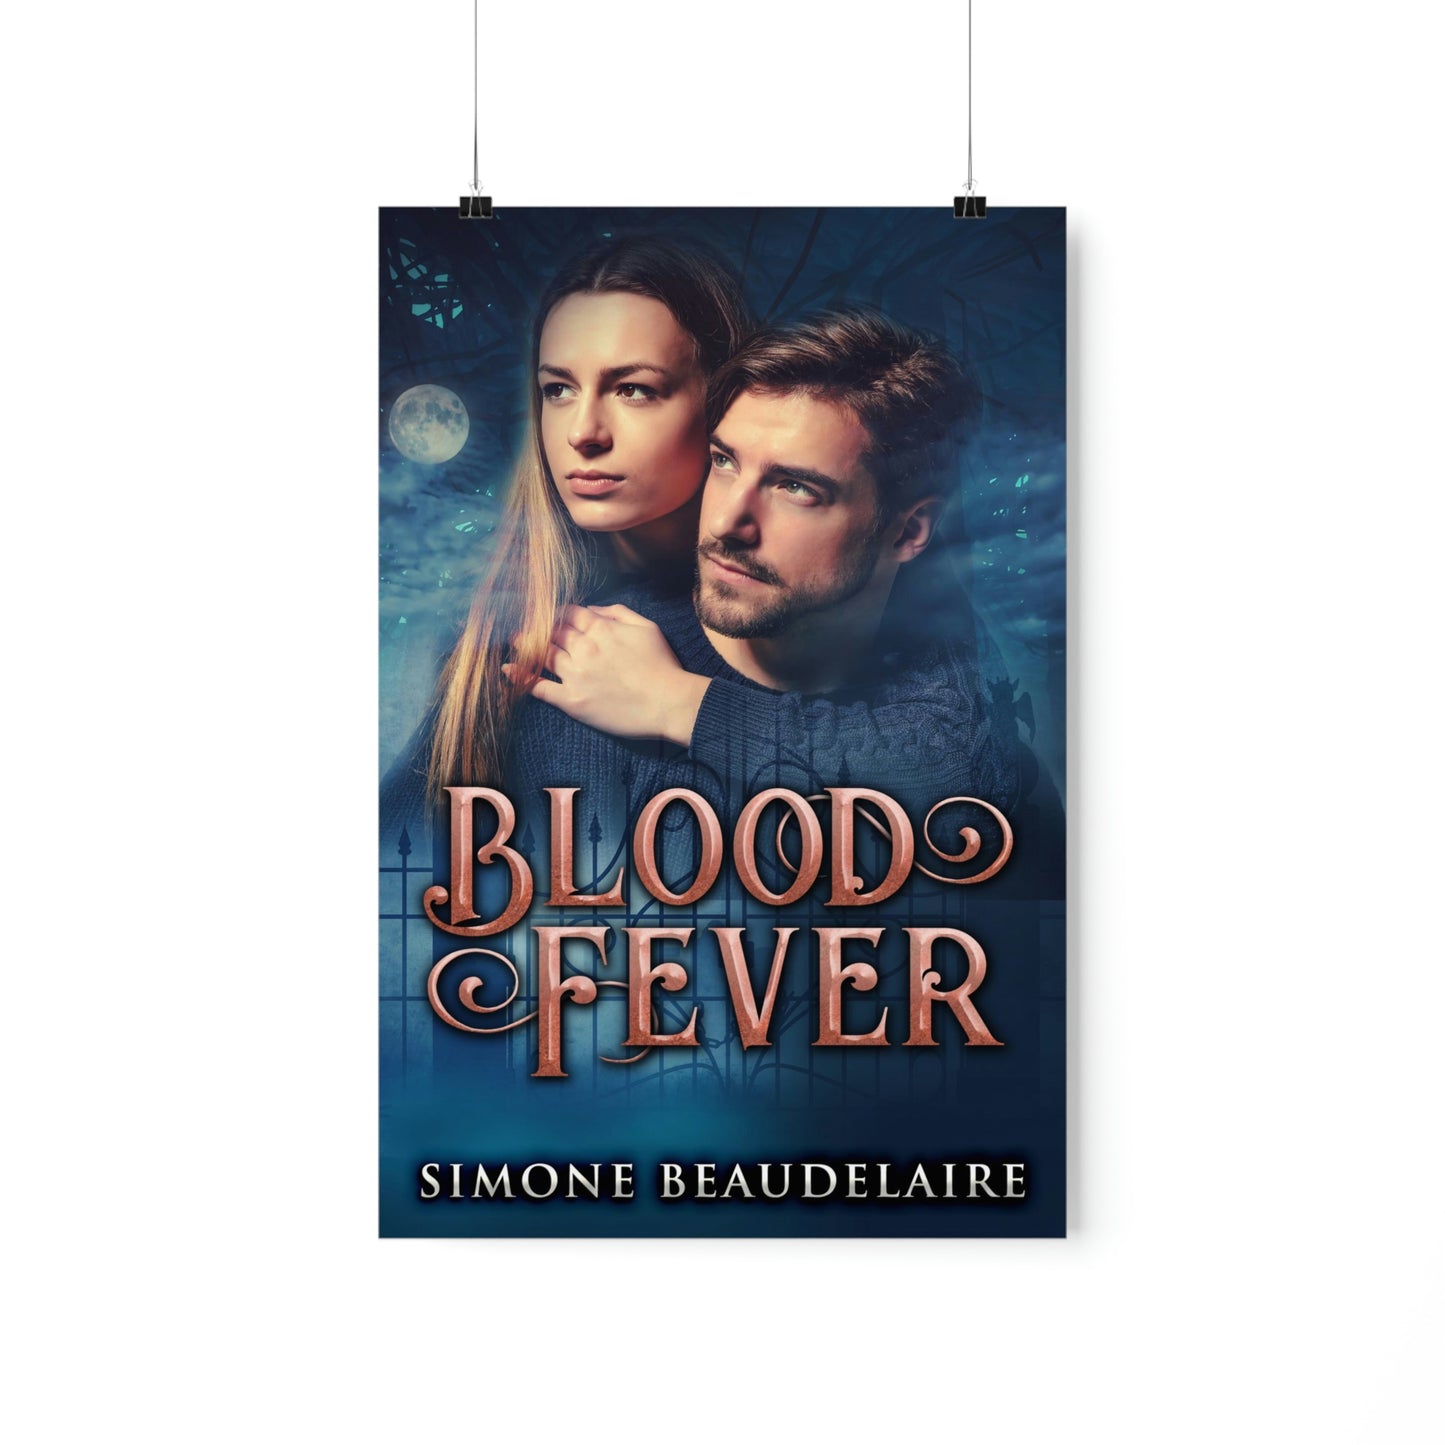 Blood Fever - Matte Poster